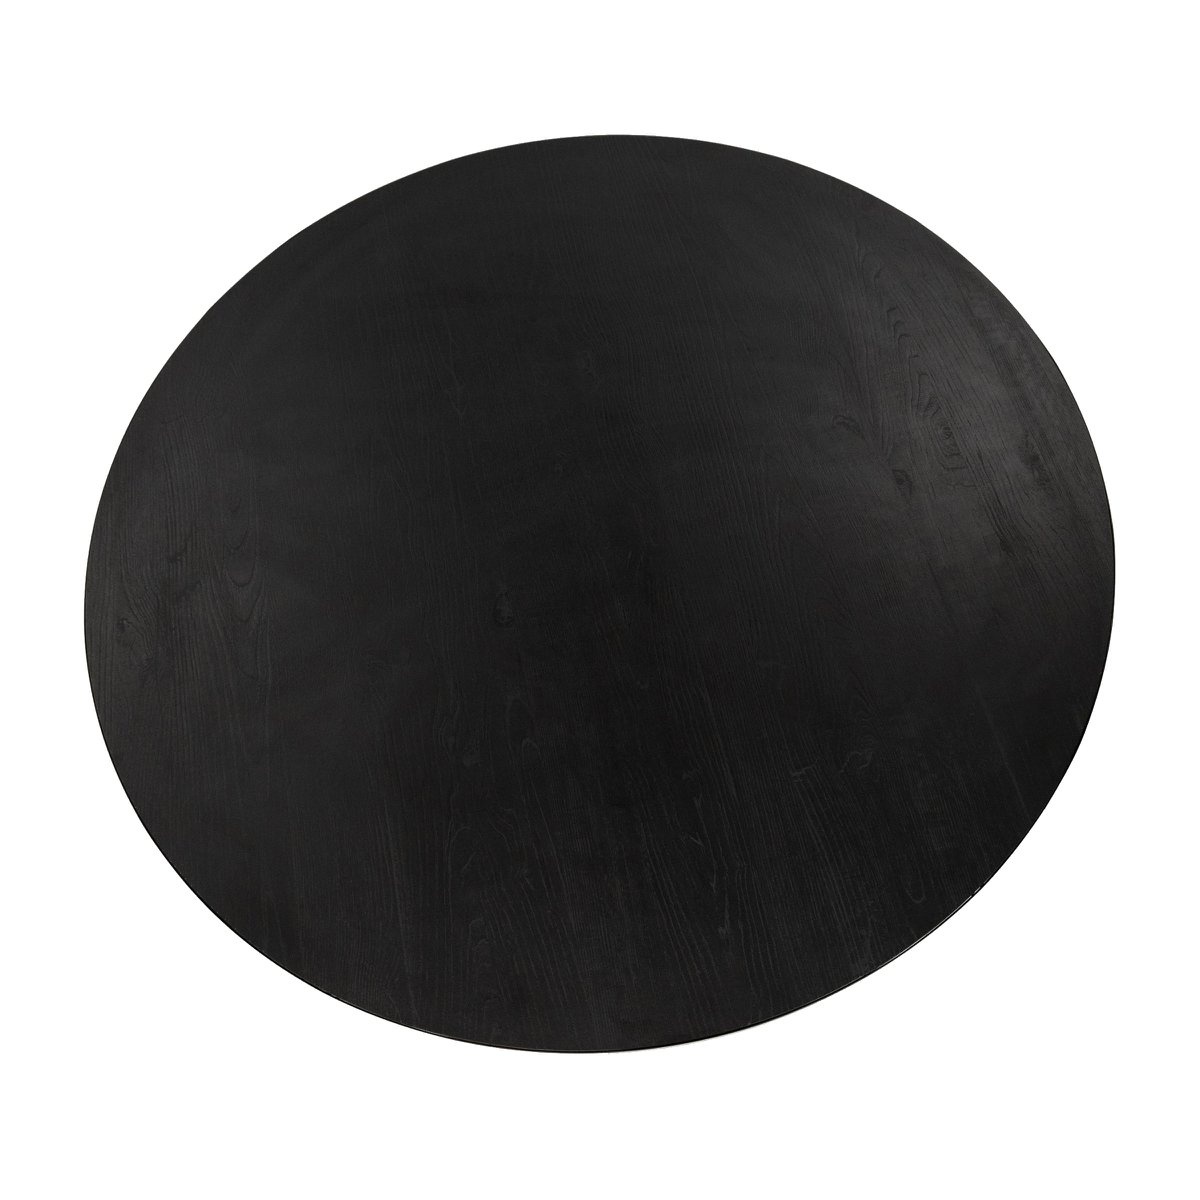 KantoormeubelenPlus Stalux Ronde eettafel 'Daan' 148cm, kleur zwart / zwart eiken